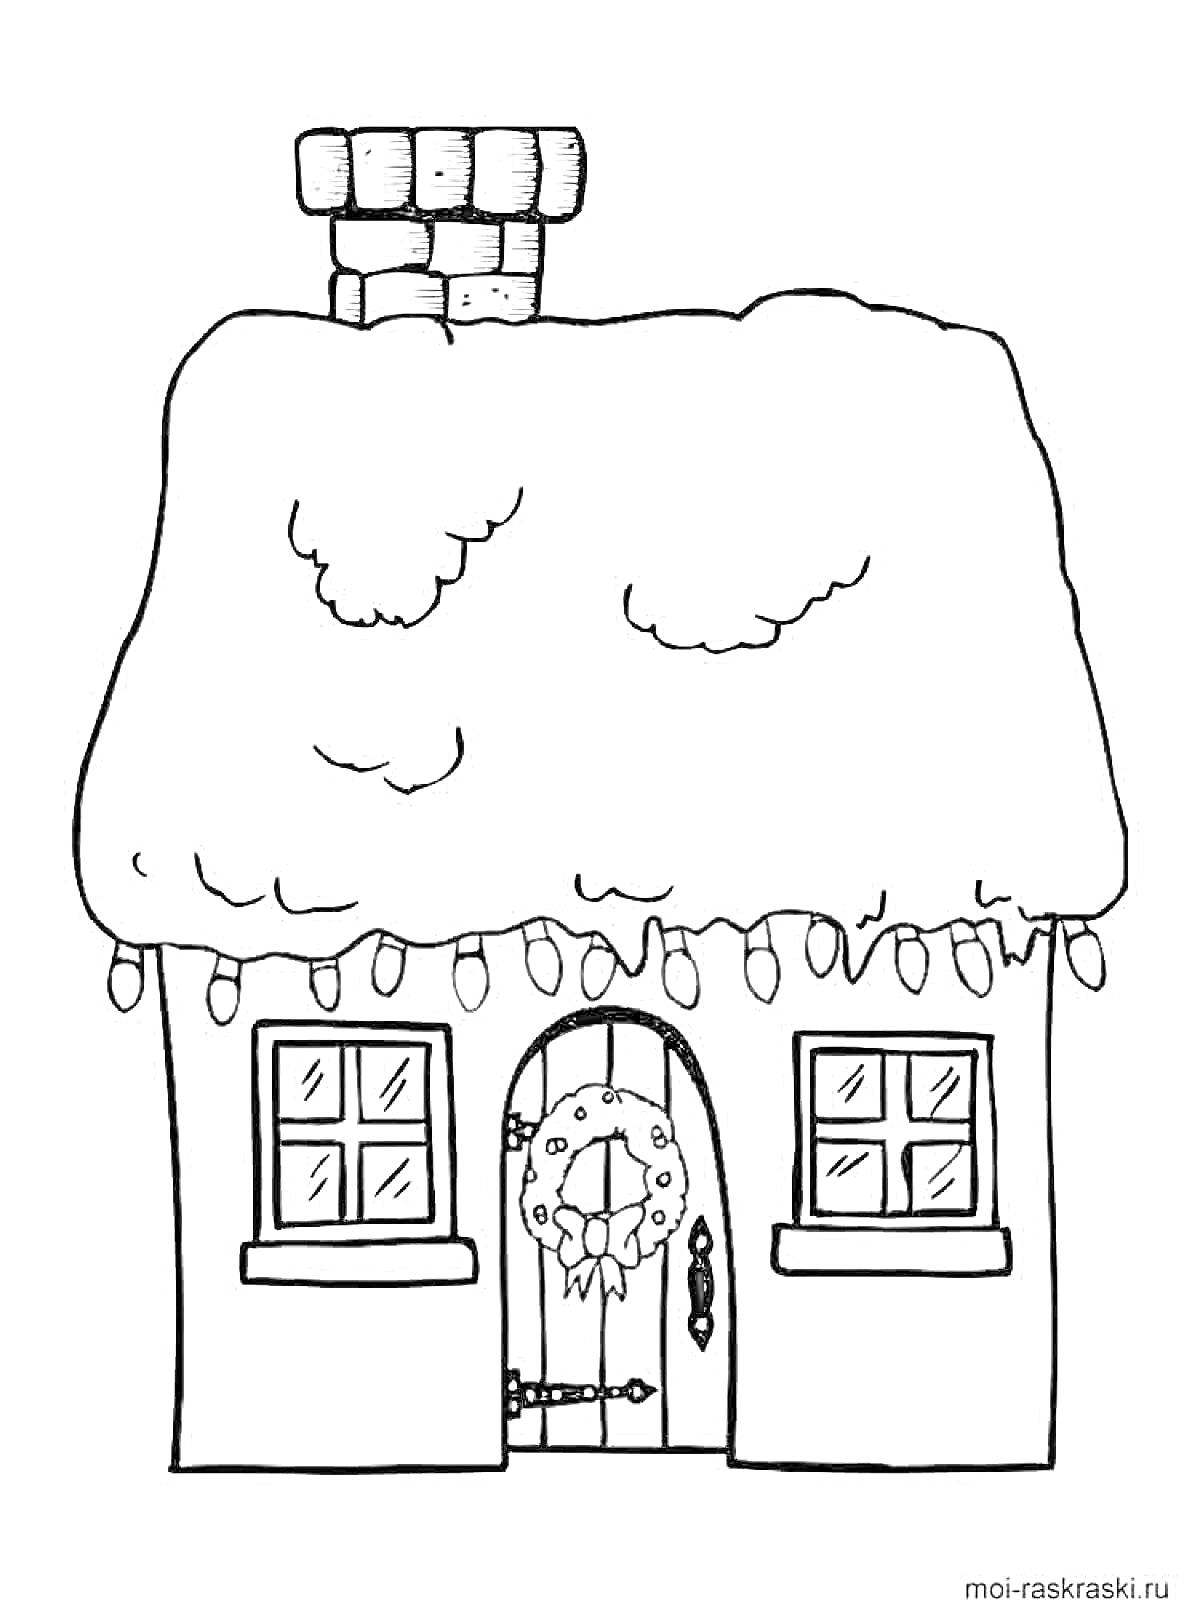 Домик с заснеженной крышей и рождественским венком на двери